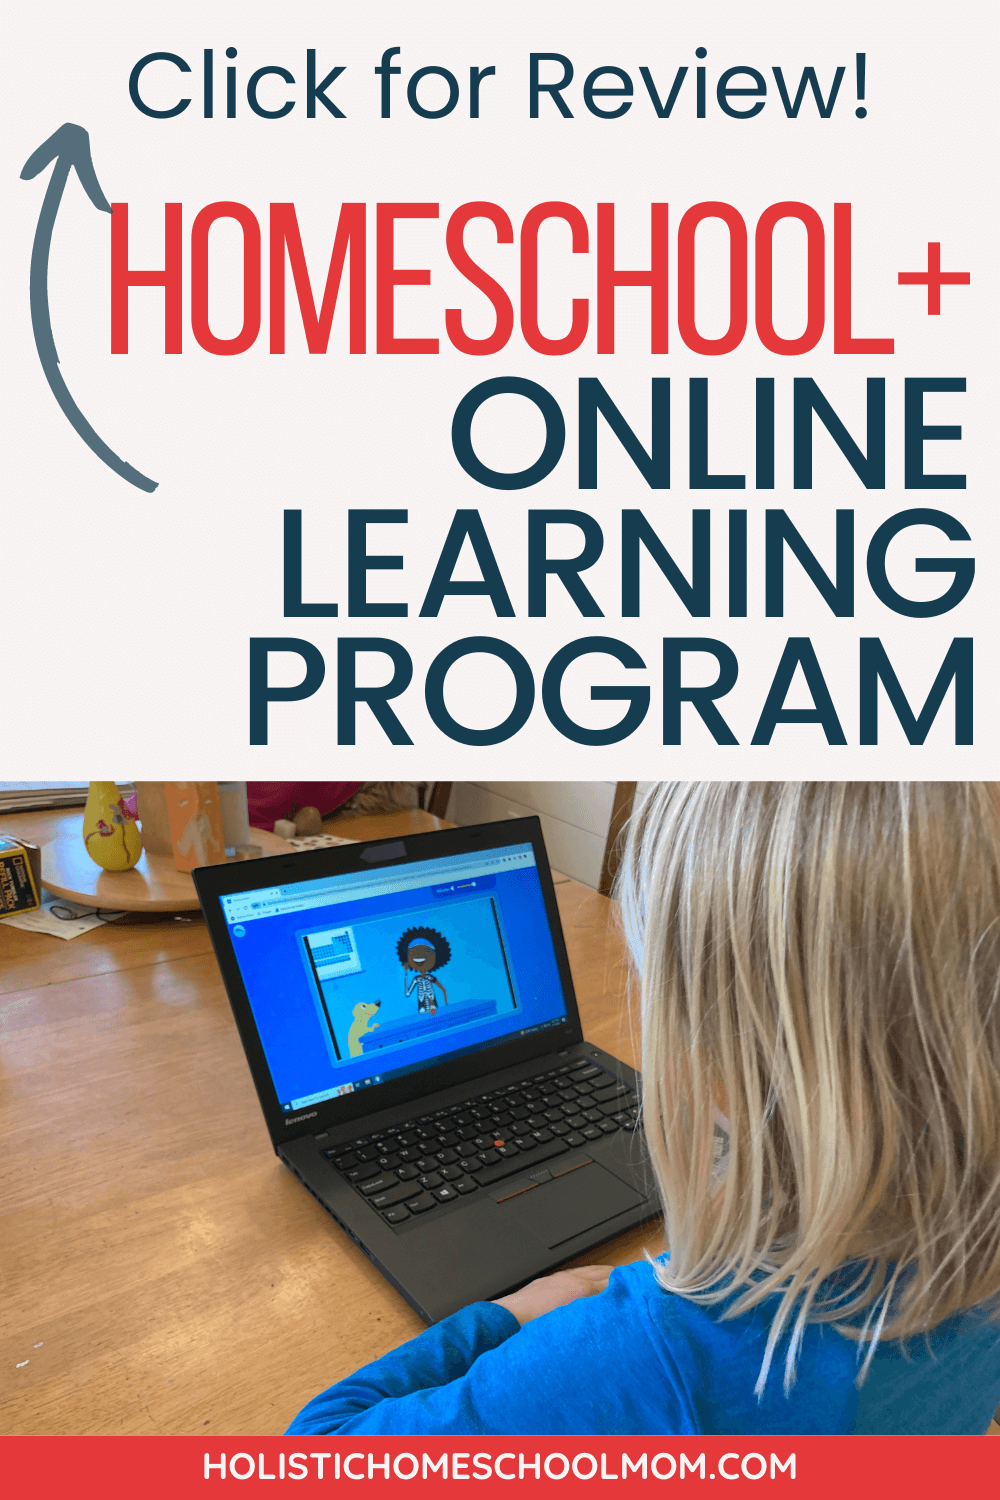 Homeschool+ Online Learning Program Pinterest Pin